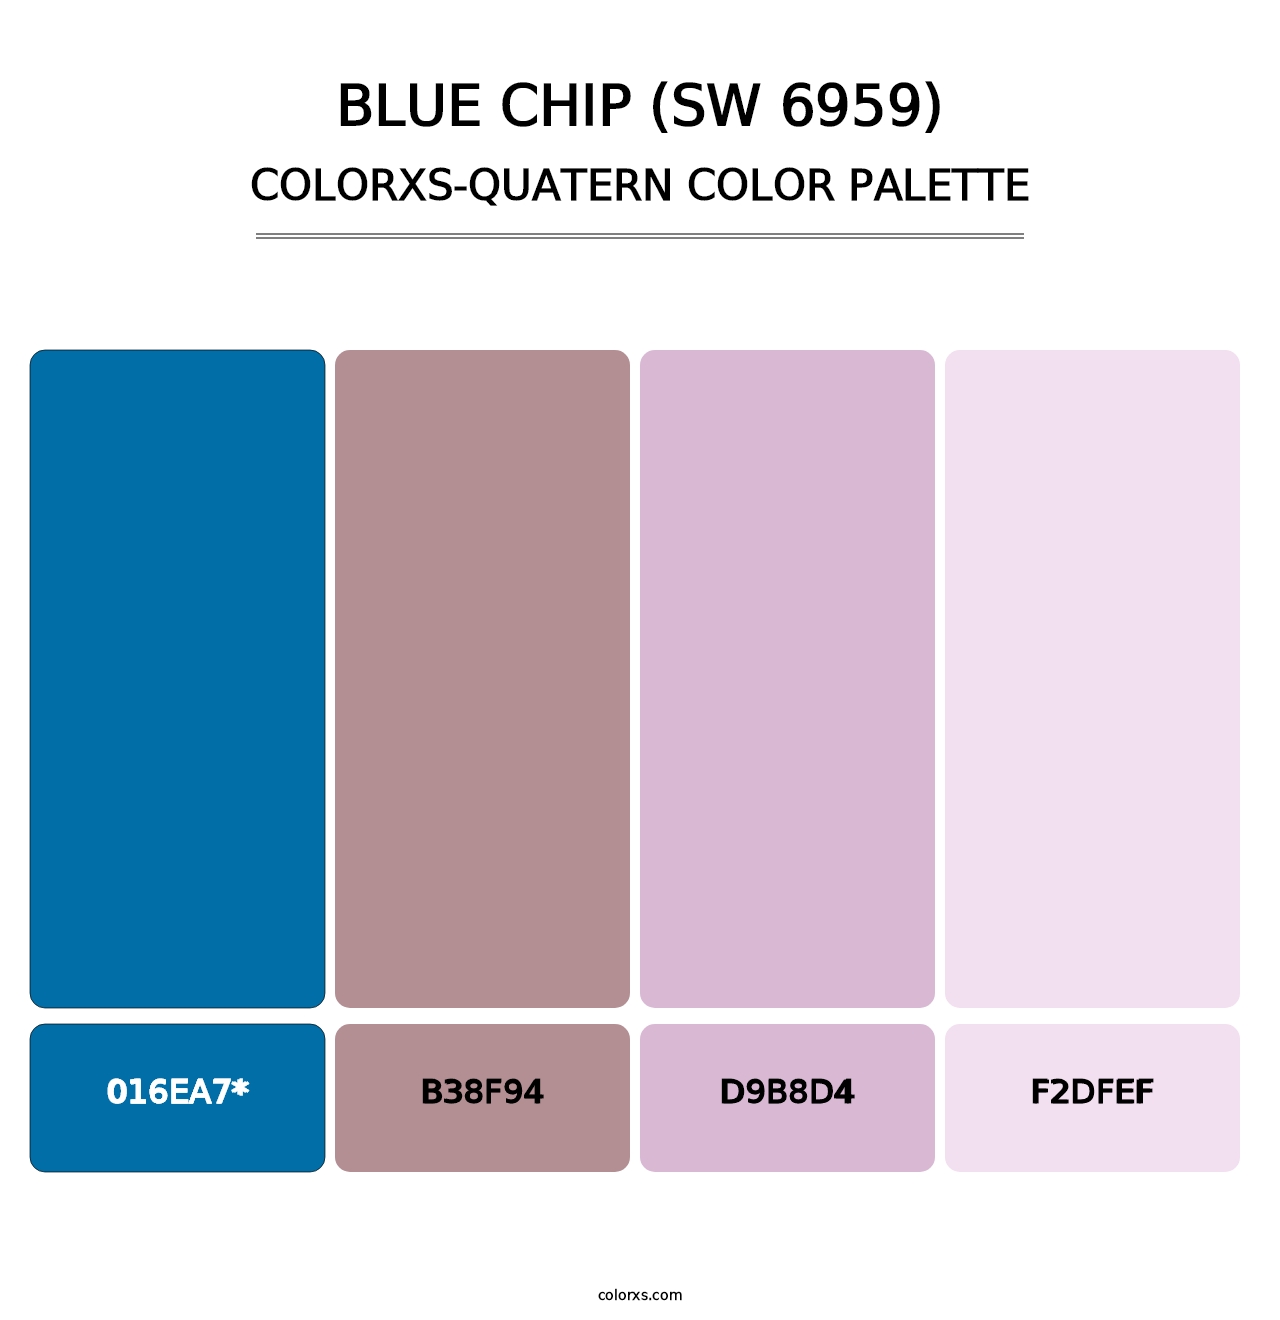 Blue Chip (SW 6959) - Colorxs Quatern Palette